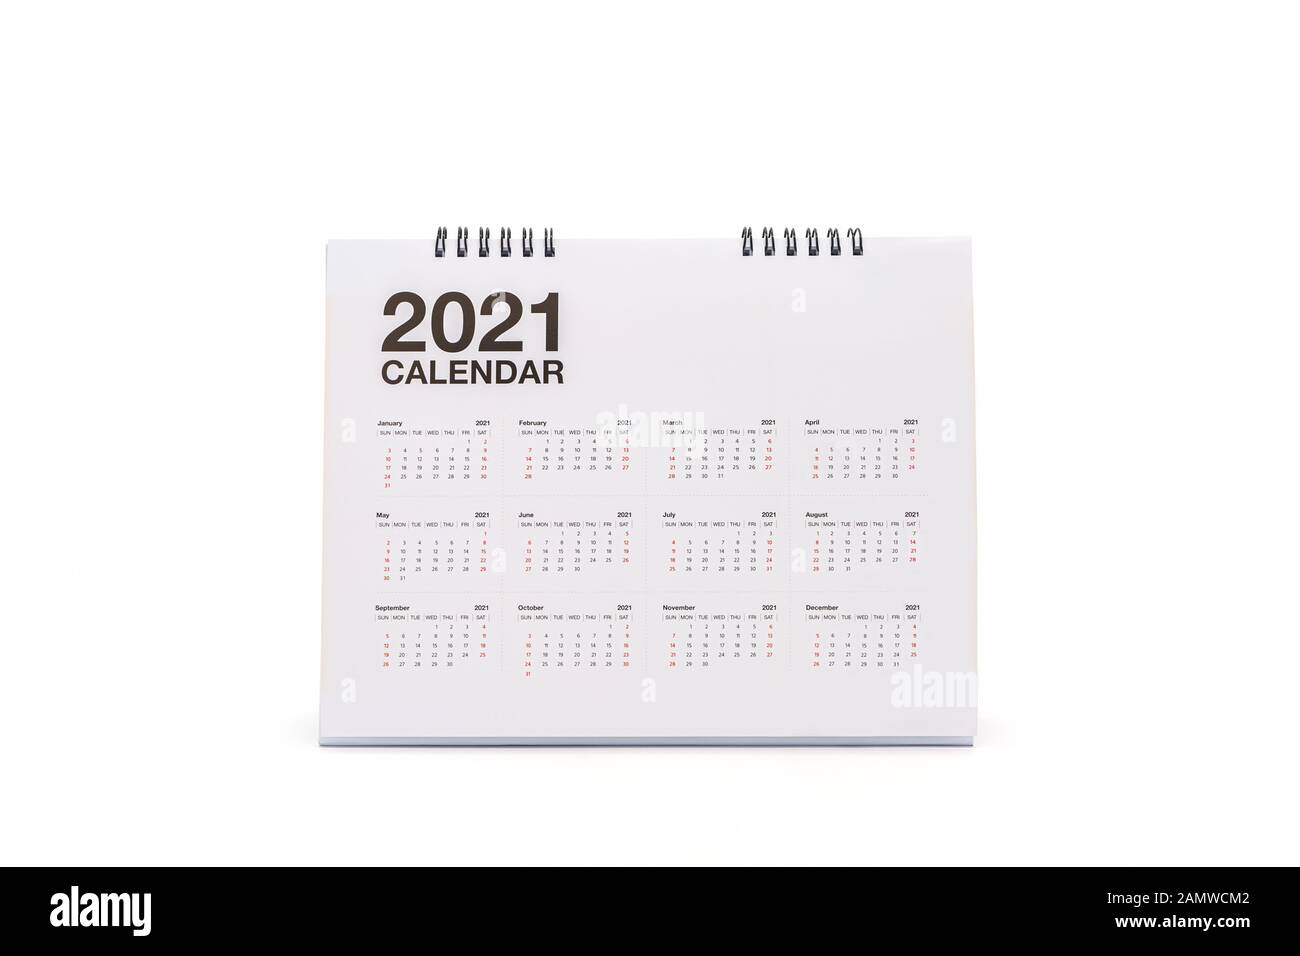 Calendario espiral de escritorio de papel blanco 2021 sobre fondo blanco. Foto de stock